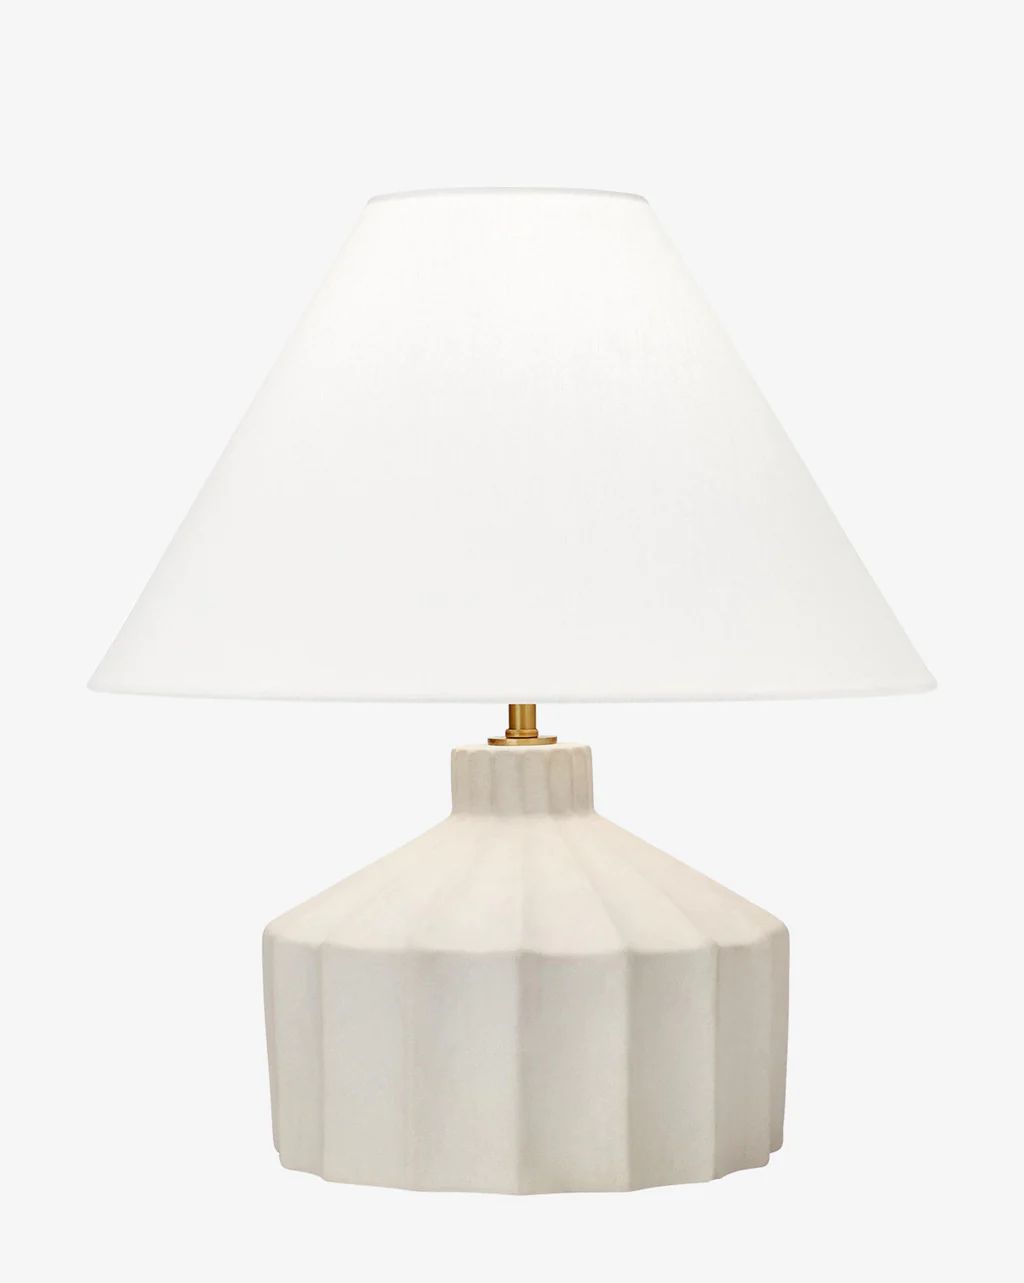 Veneto Table Lamp | McGee & Co.